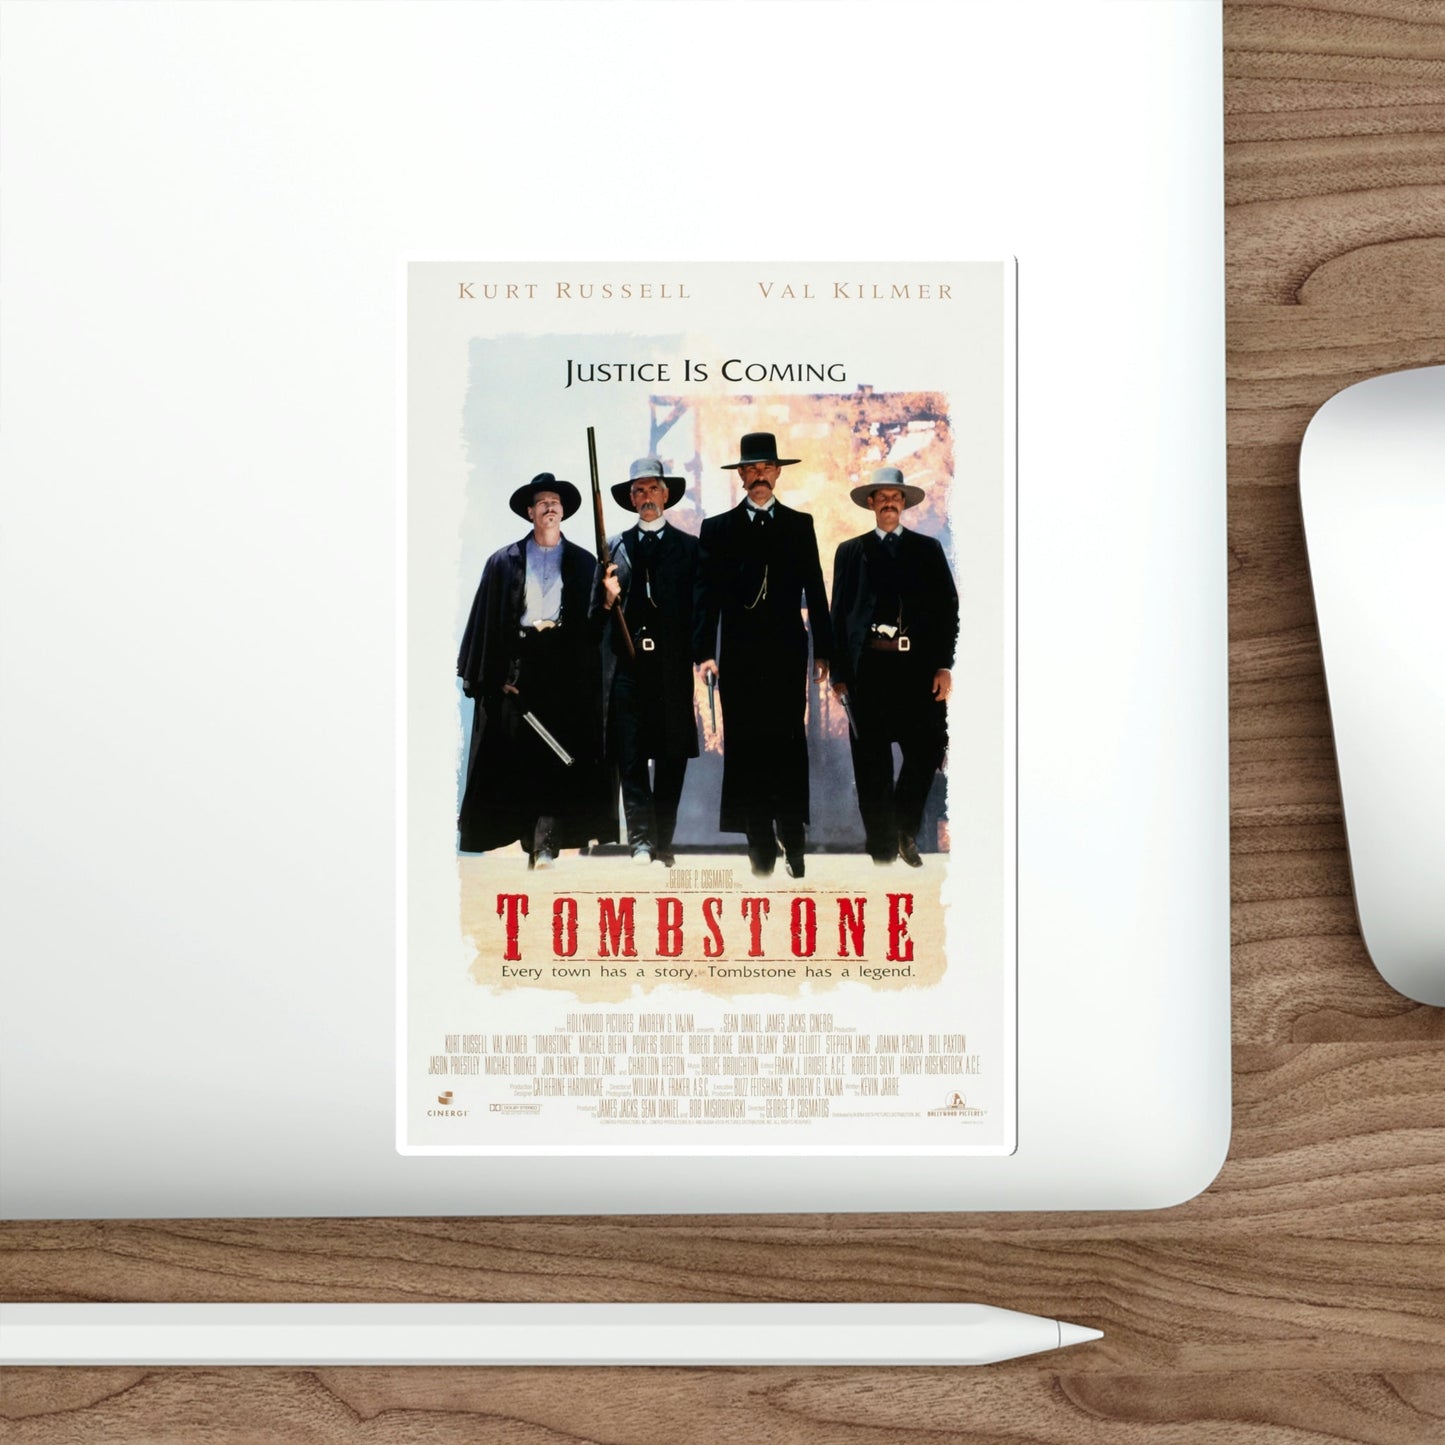 Tombstone 1993 Movie Poster STICKER Vinyl Die-Cut Decal-The Sticker Space